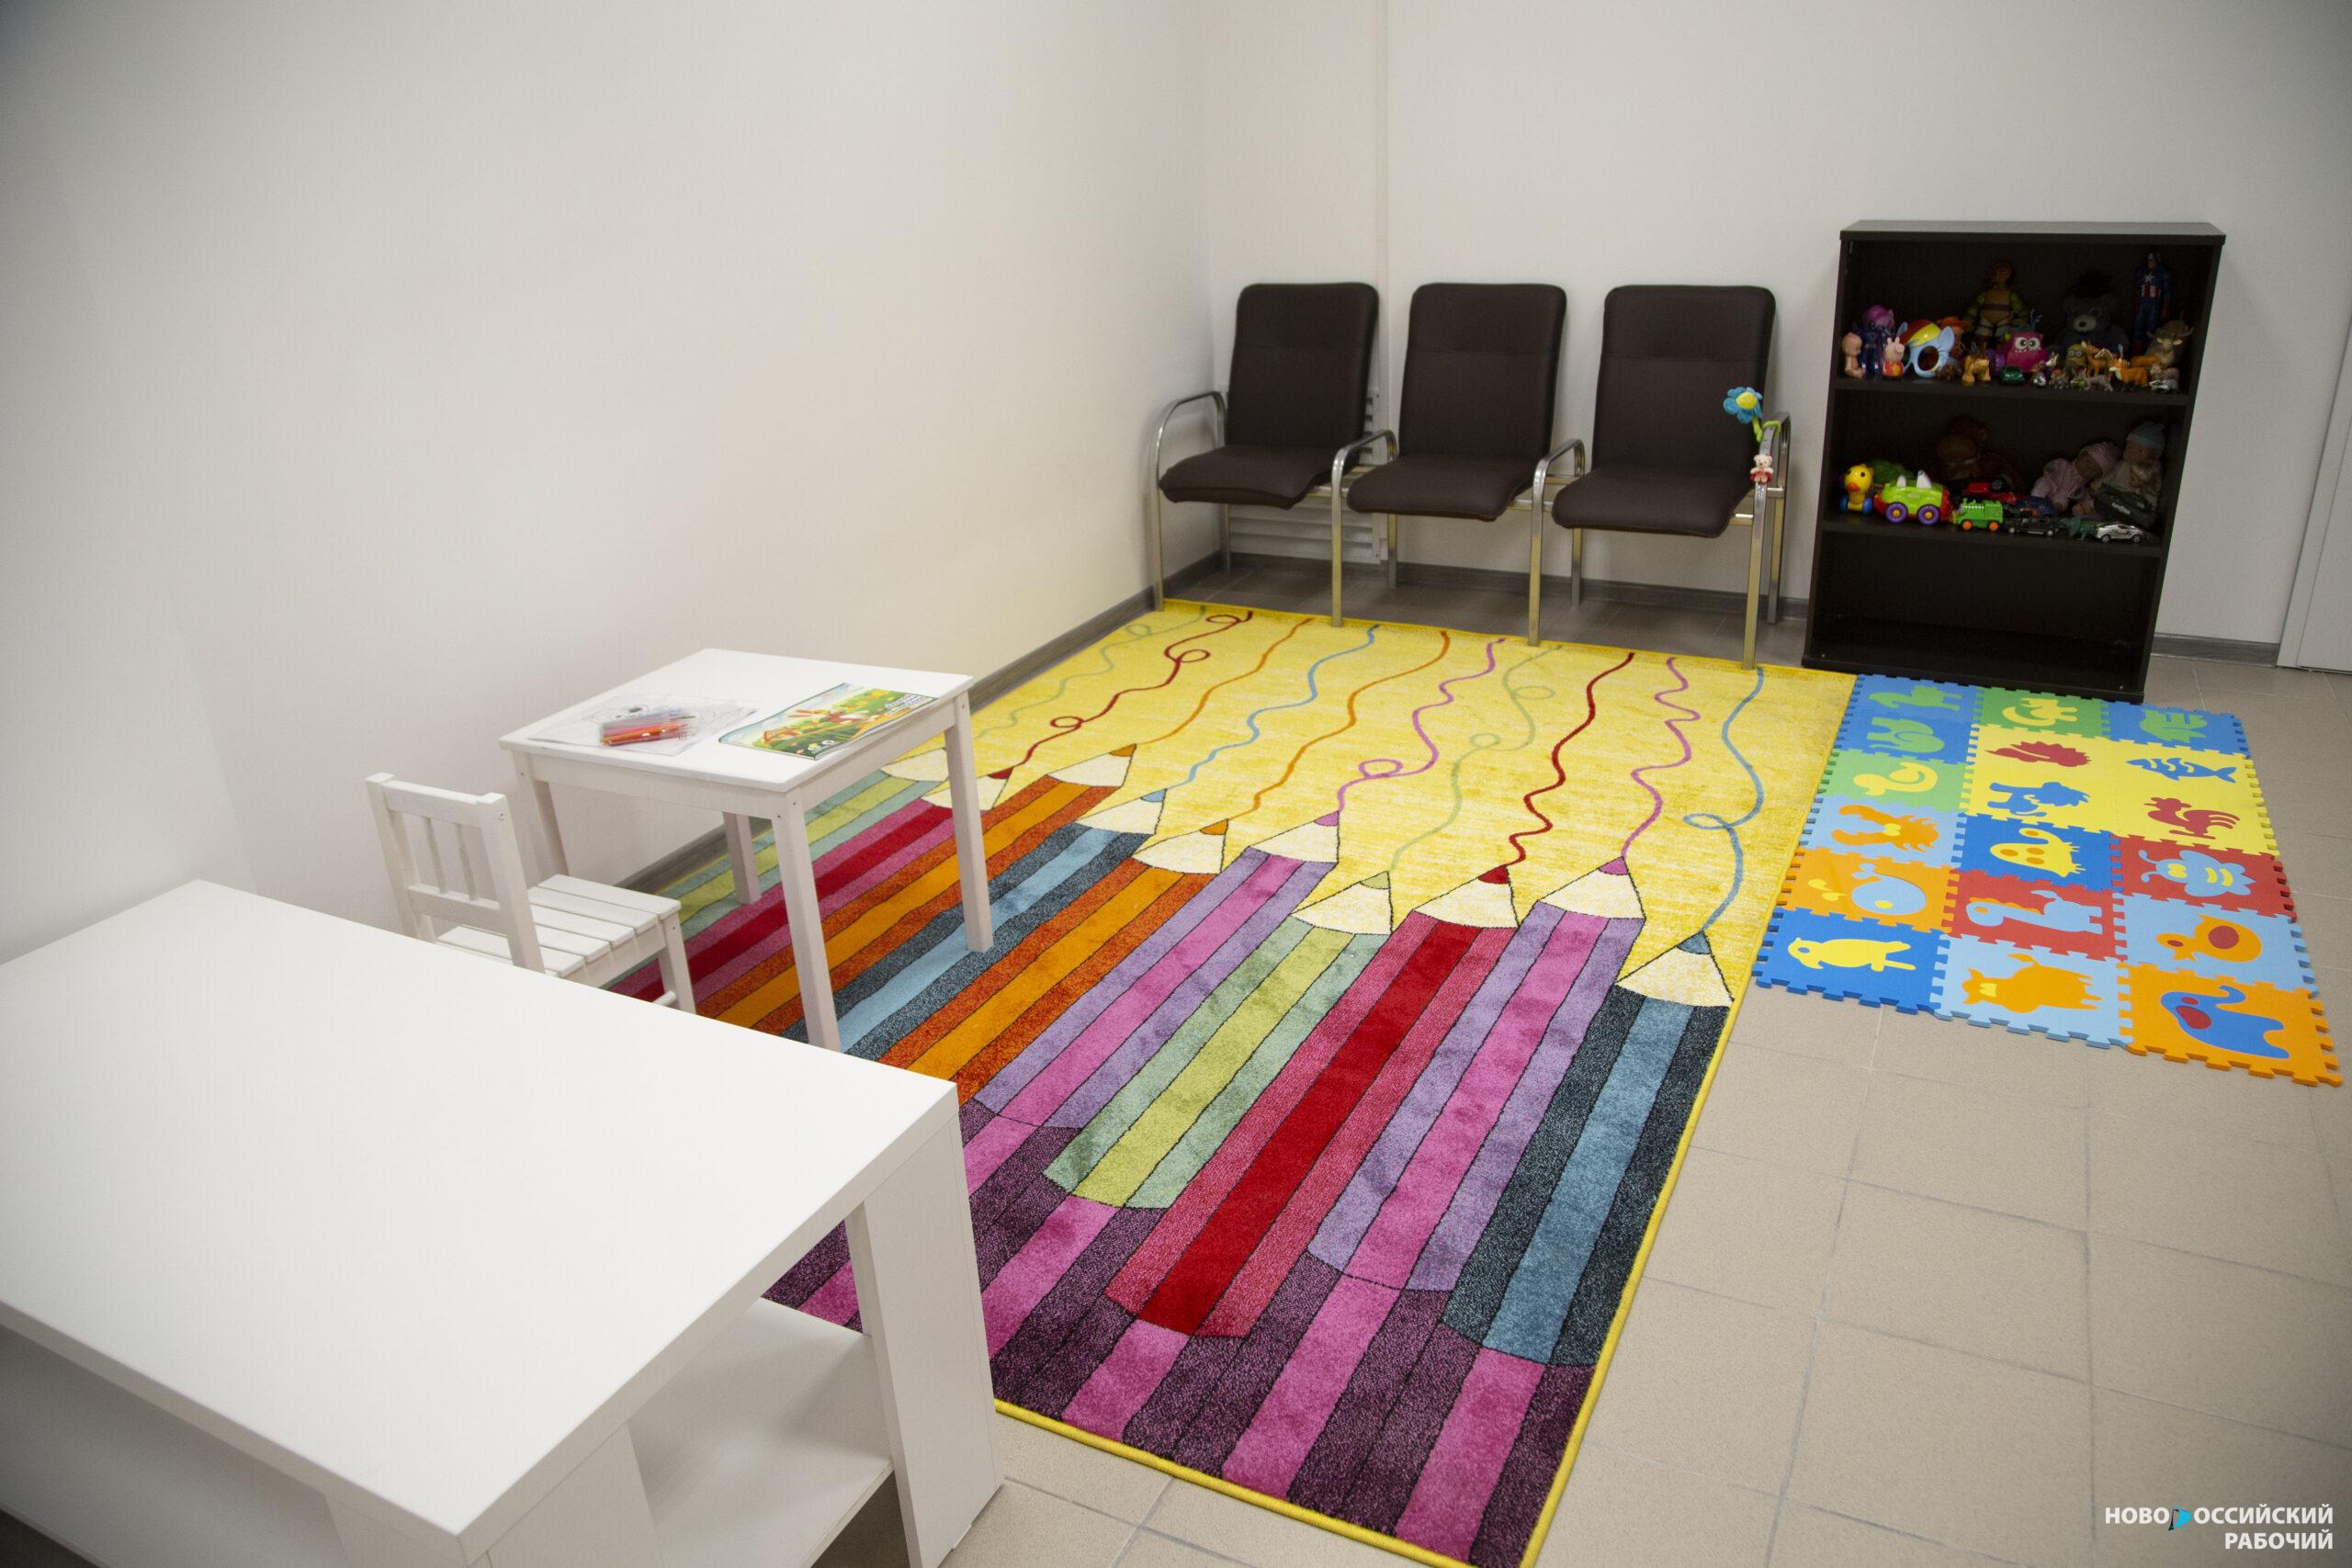 Сроки ввода детского сада в пригороде Новороссийска в очередной раз перенесены